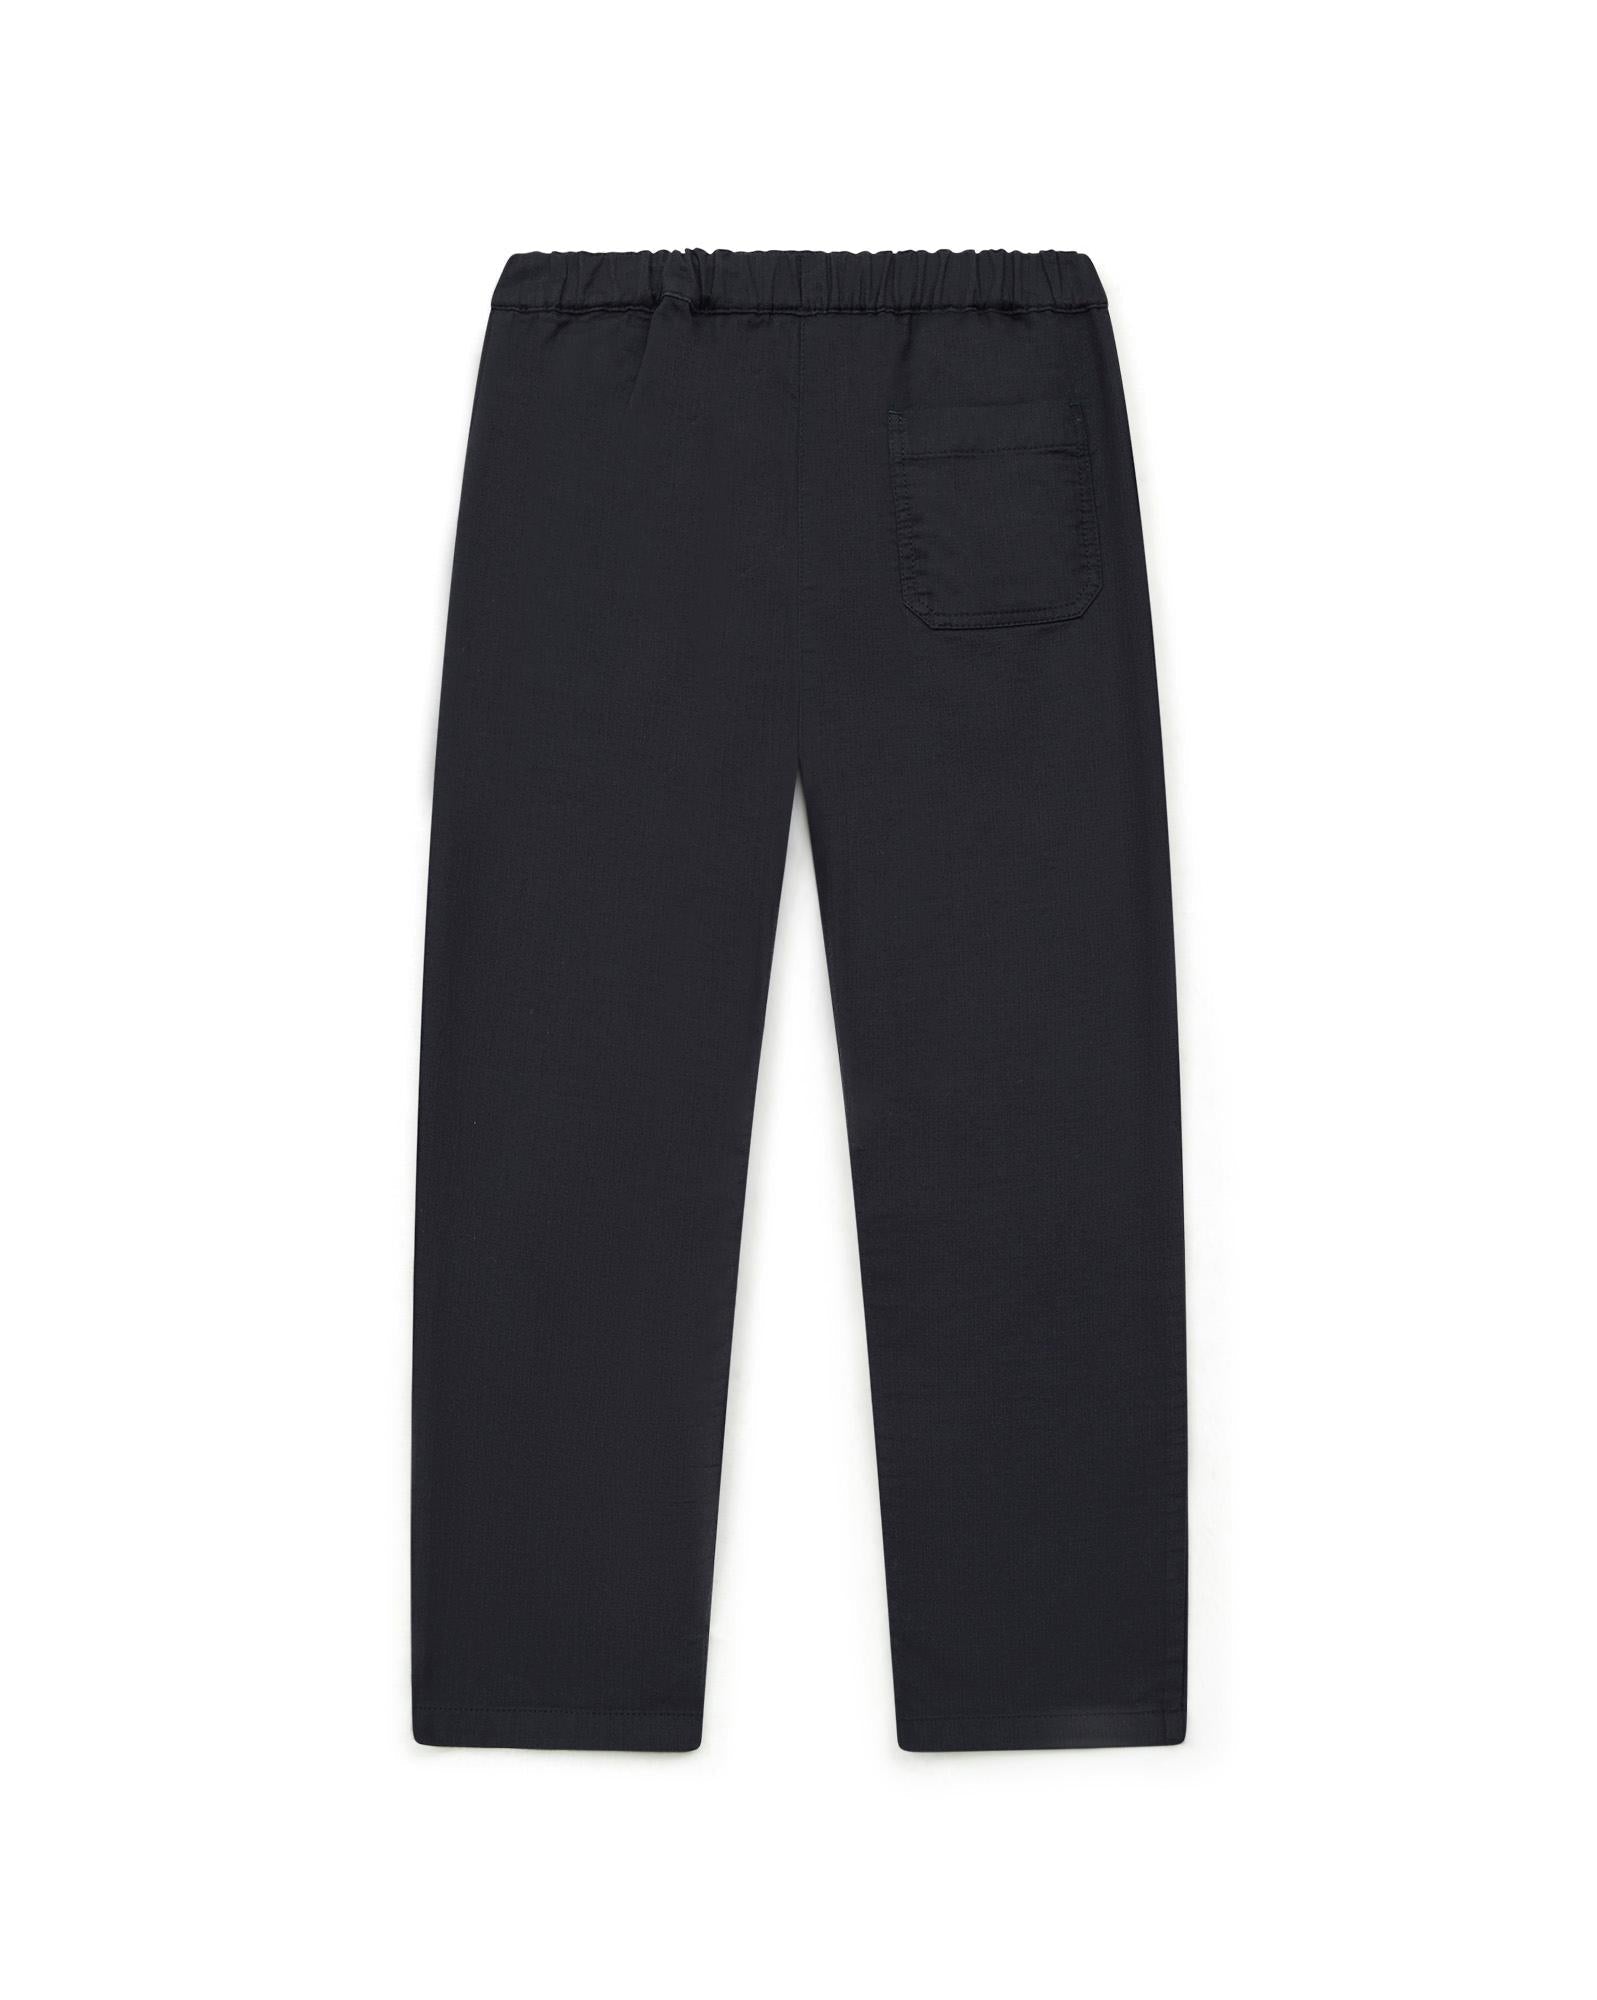 Pantalon Batcha noir en 100% coton